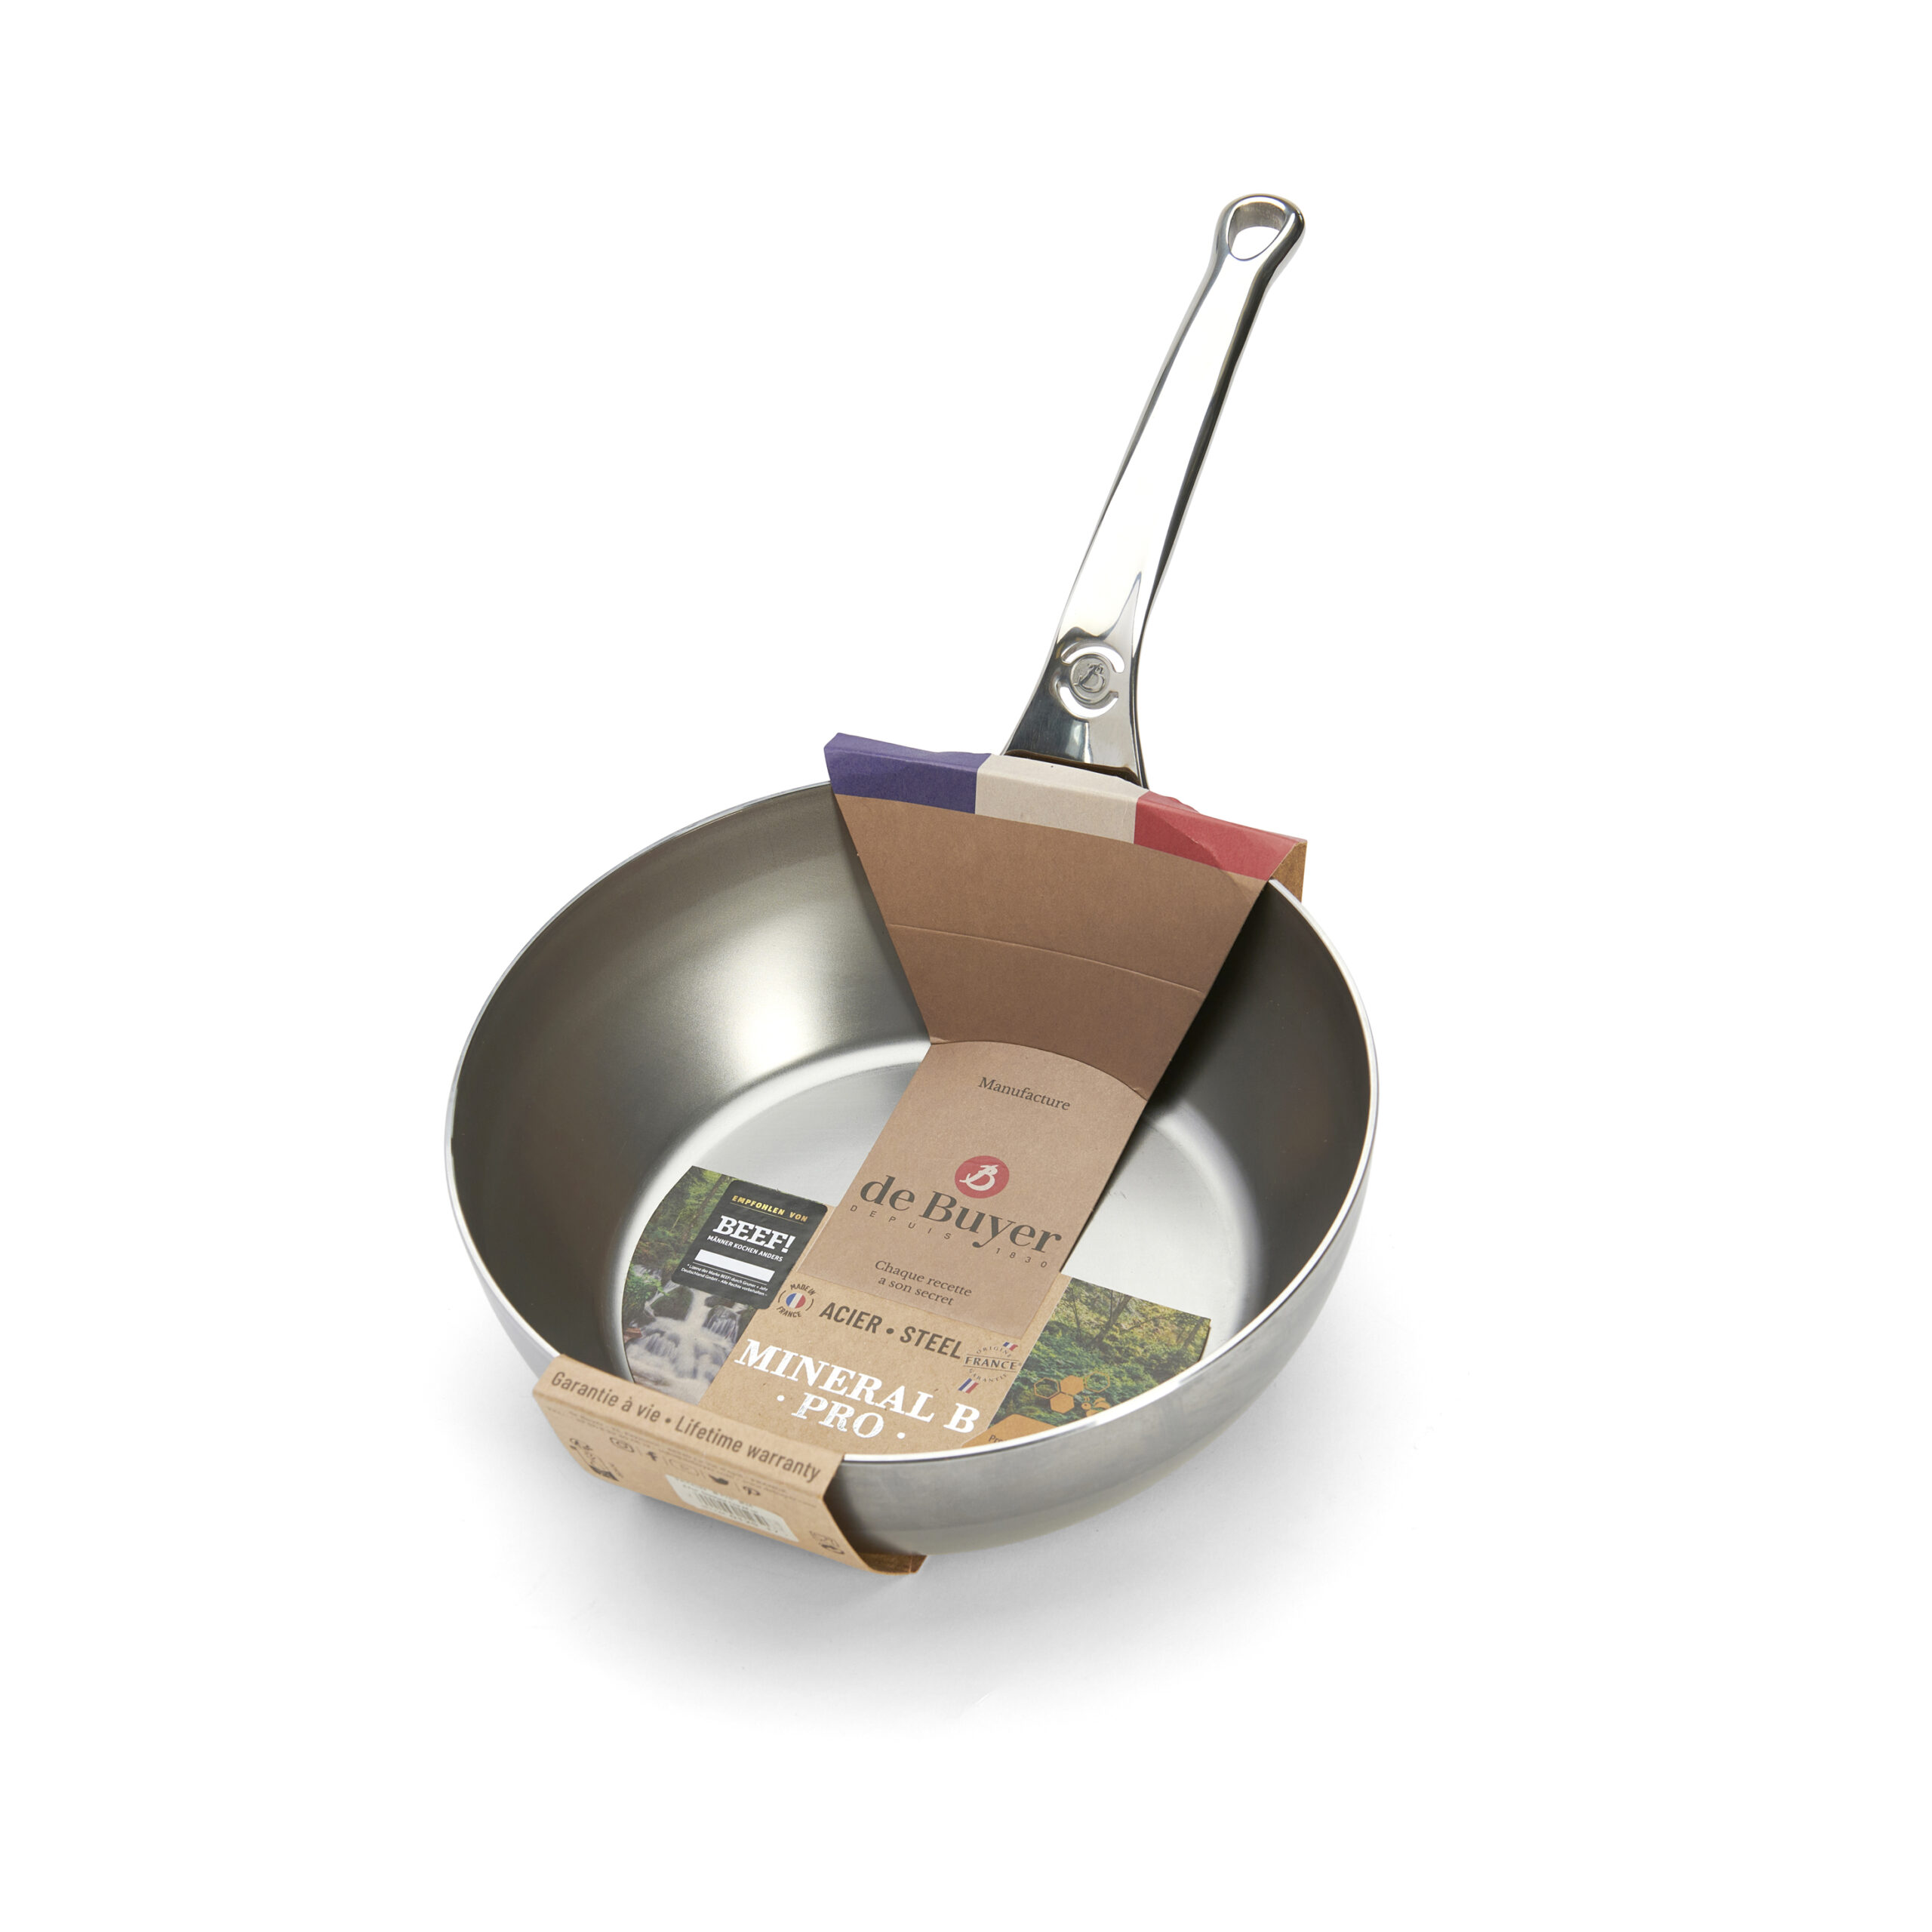 De Buyer Mineral B Pro steel omelette pan - 2 sizes